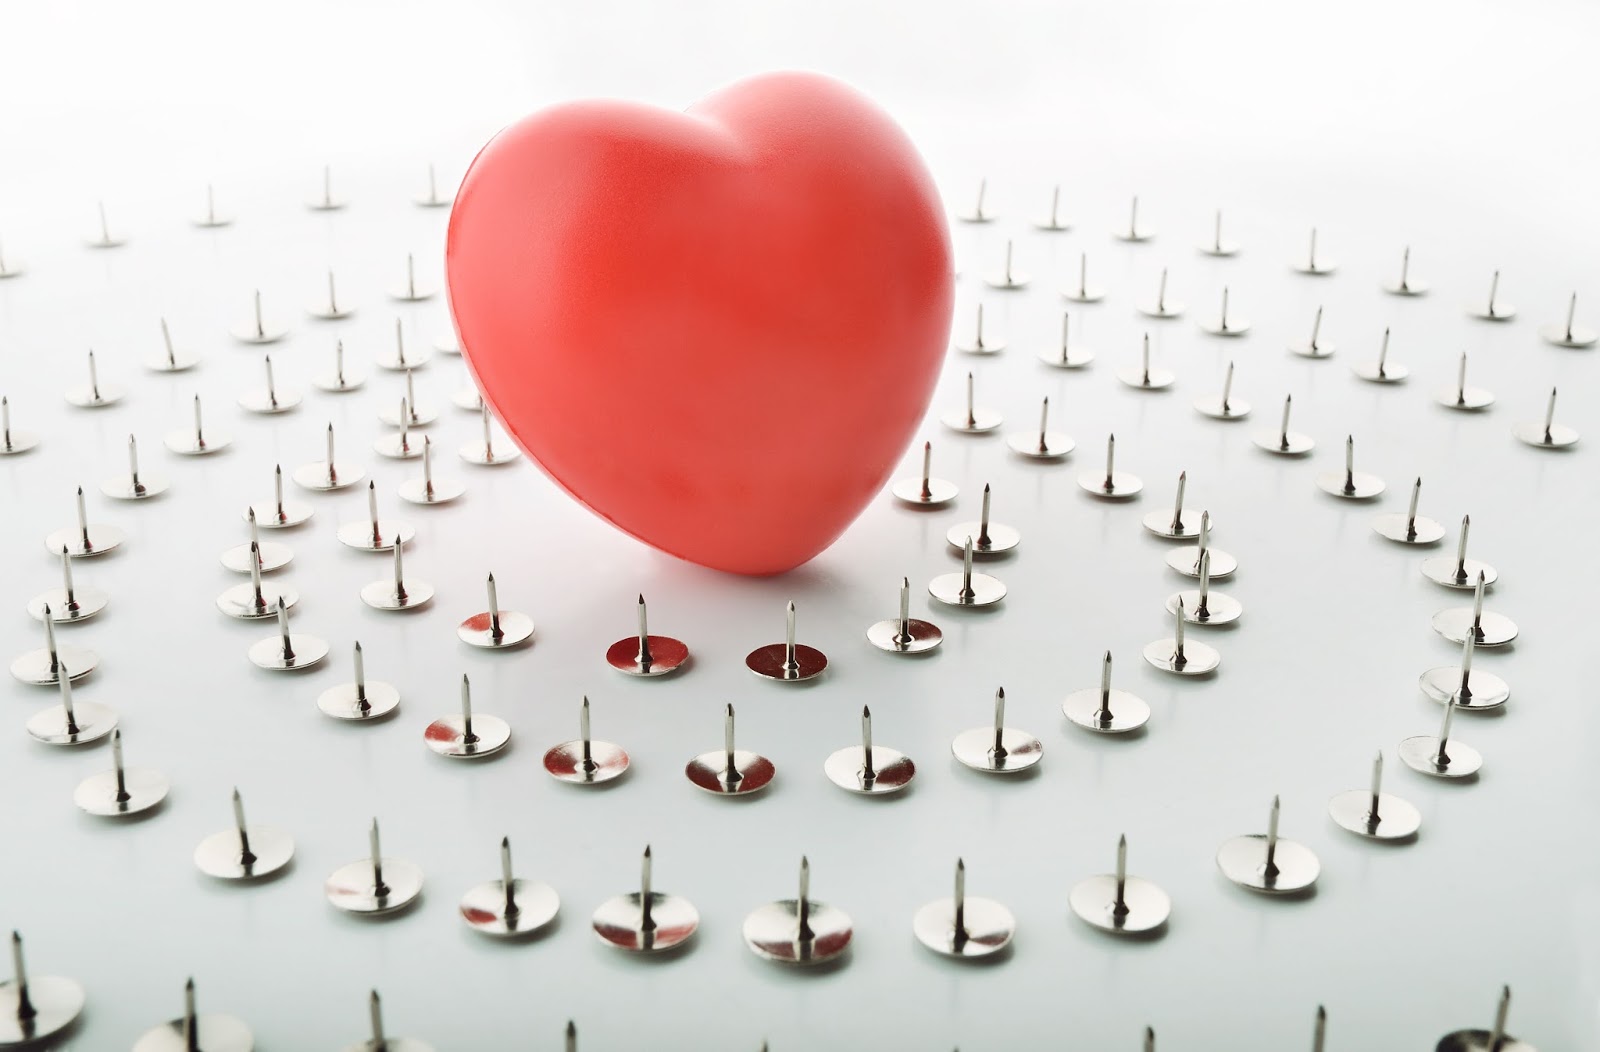 La paura di amare | Riabilitazione Psicoaffettiva | Roberta Calvi Psicologa e Sessuologa